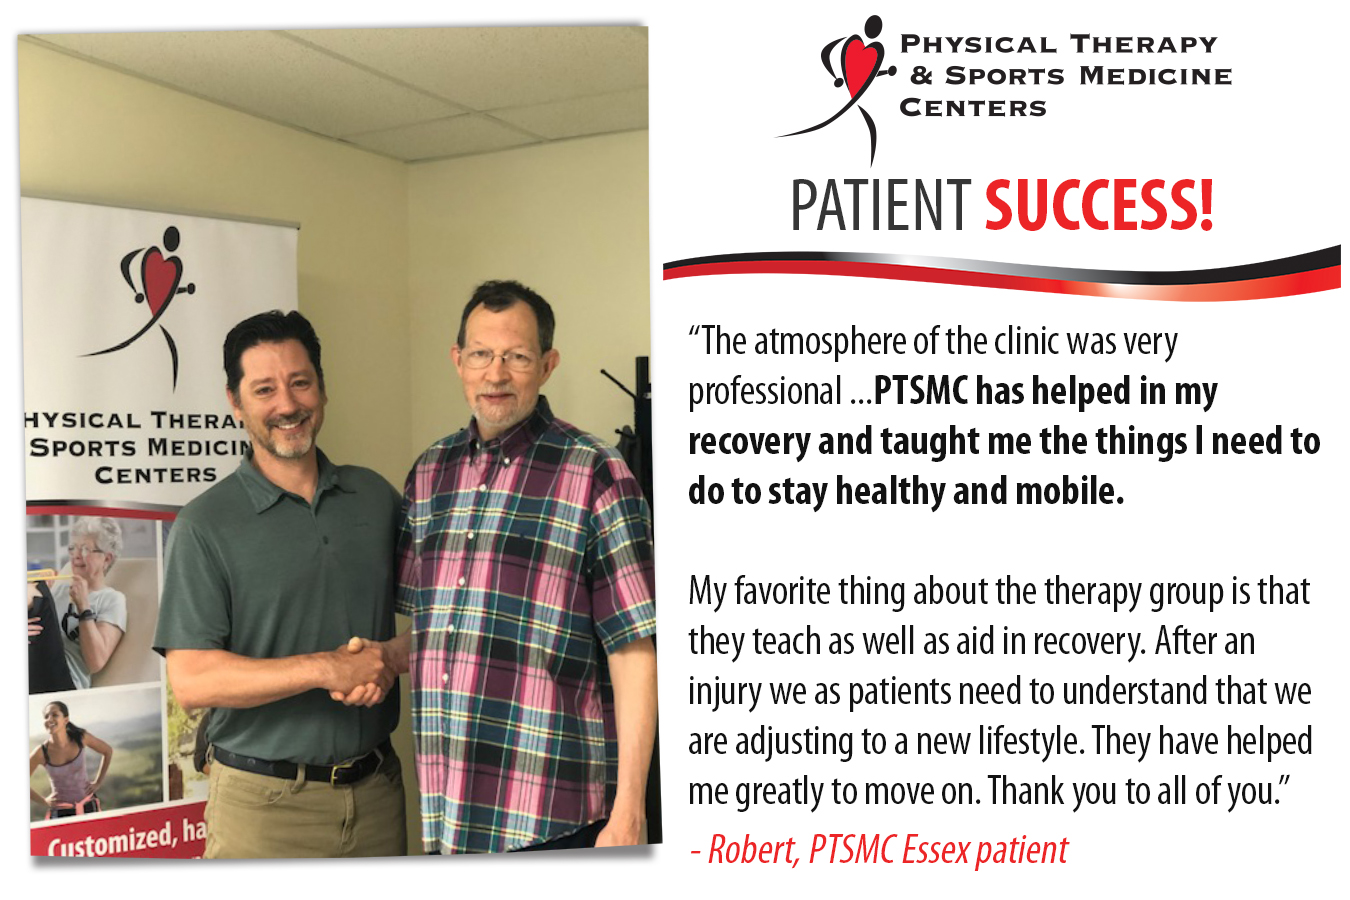 PTSMC Essex patient success story - Robert